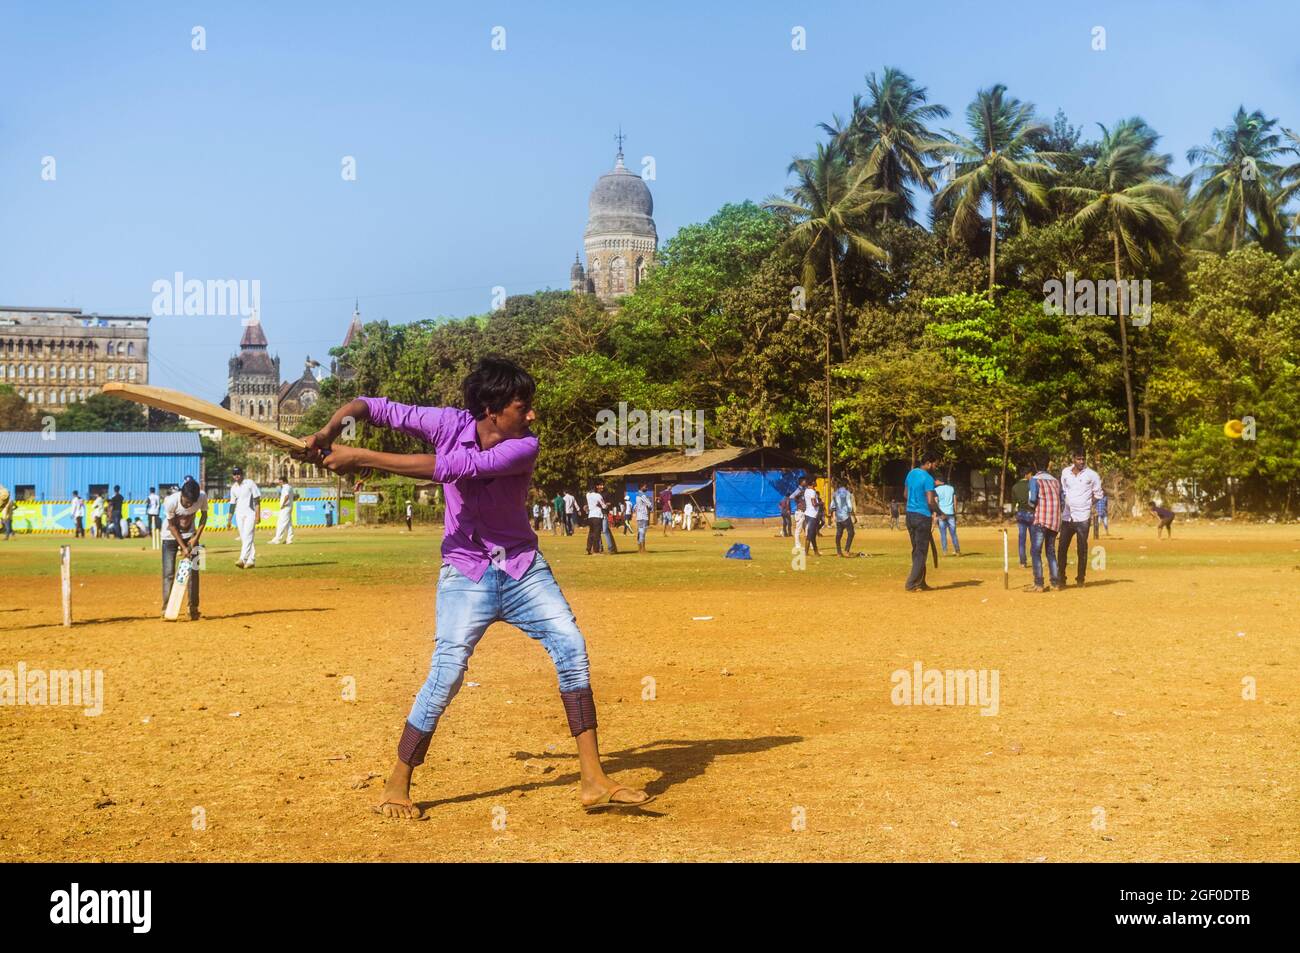 Mumbai, Maharashtra, Inde : UN jeune homme joue au cricket dans le parc Oval Maidan du district de Churchgate. Banque D'Images